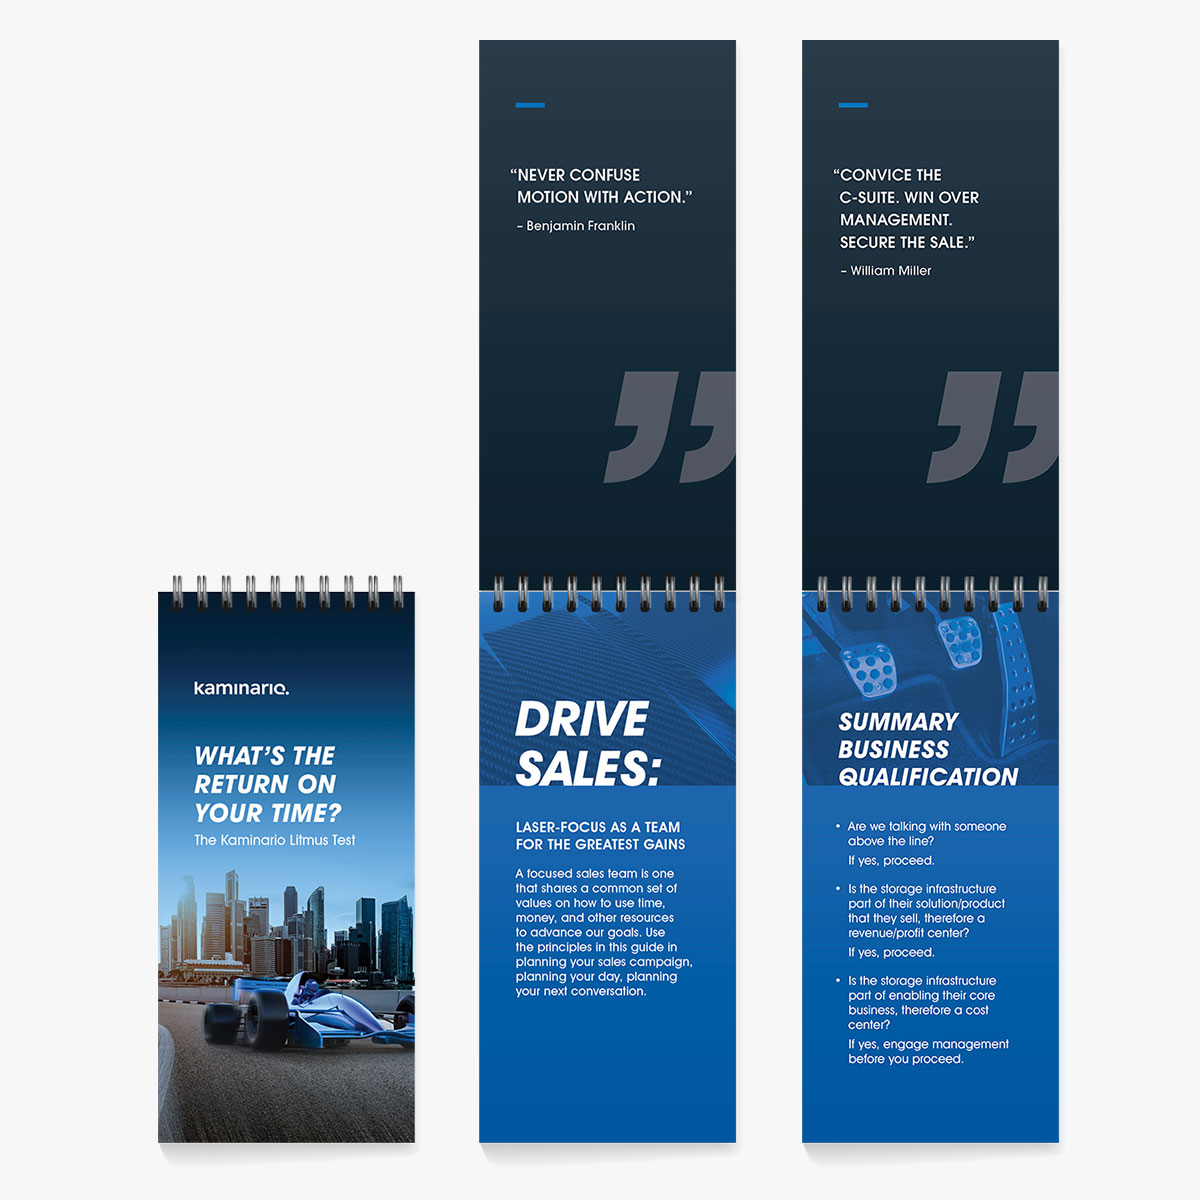 Kaminario Creative Campaigns – Desktop Flipbook Sales Tool Design